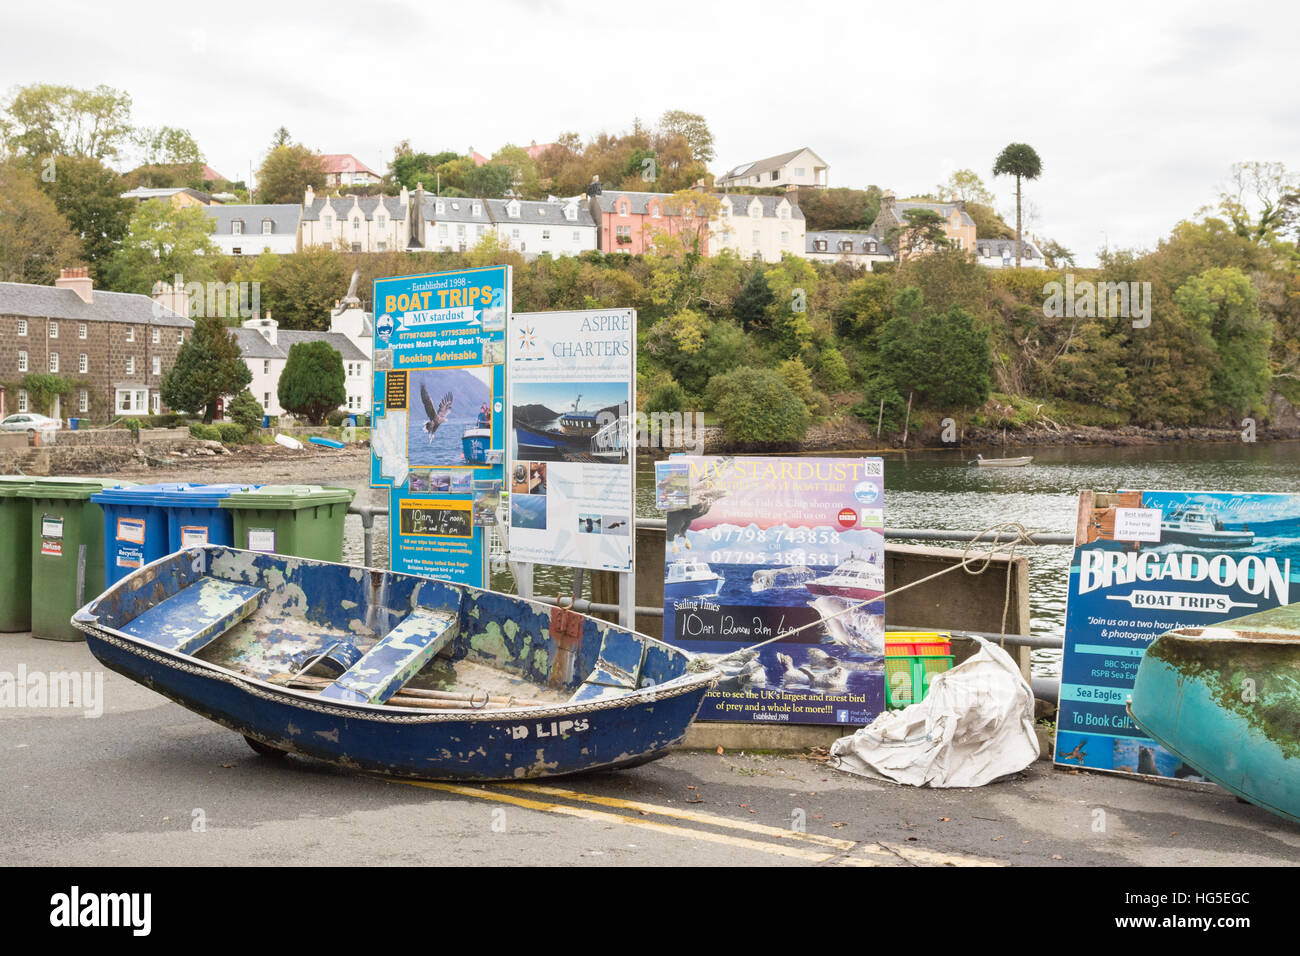 Le port de Portree publicité les panneaux touristiques, des excursions en bateau Île de Skye, Écosse, Royaume-Uni Banque D'Images